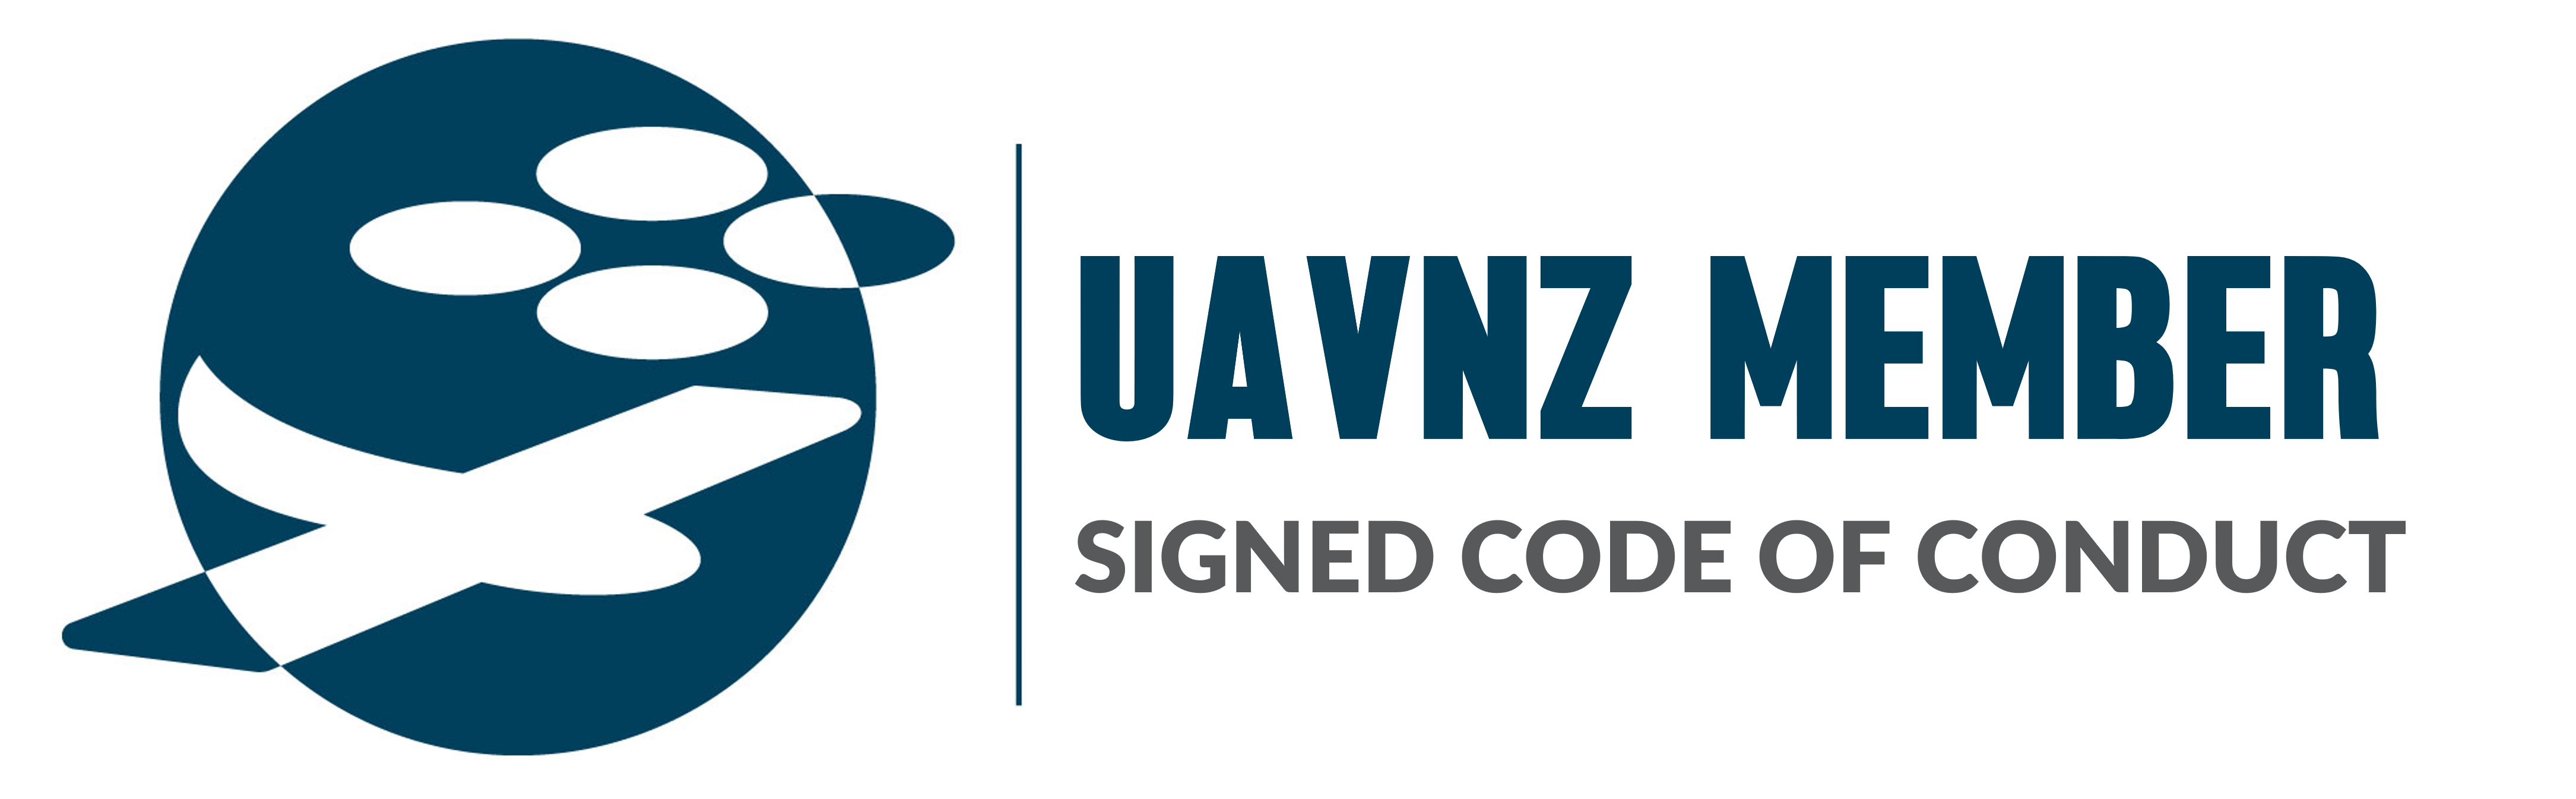 UAVNZ Member endorsement